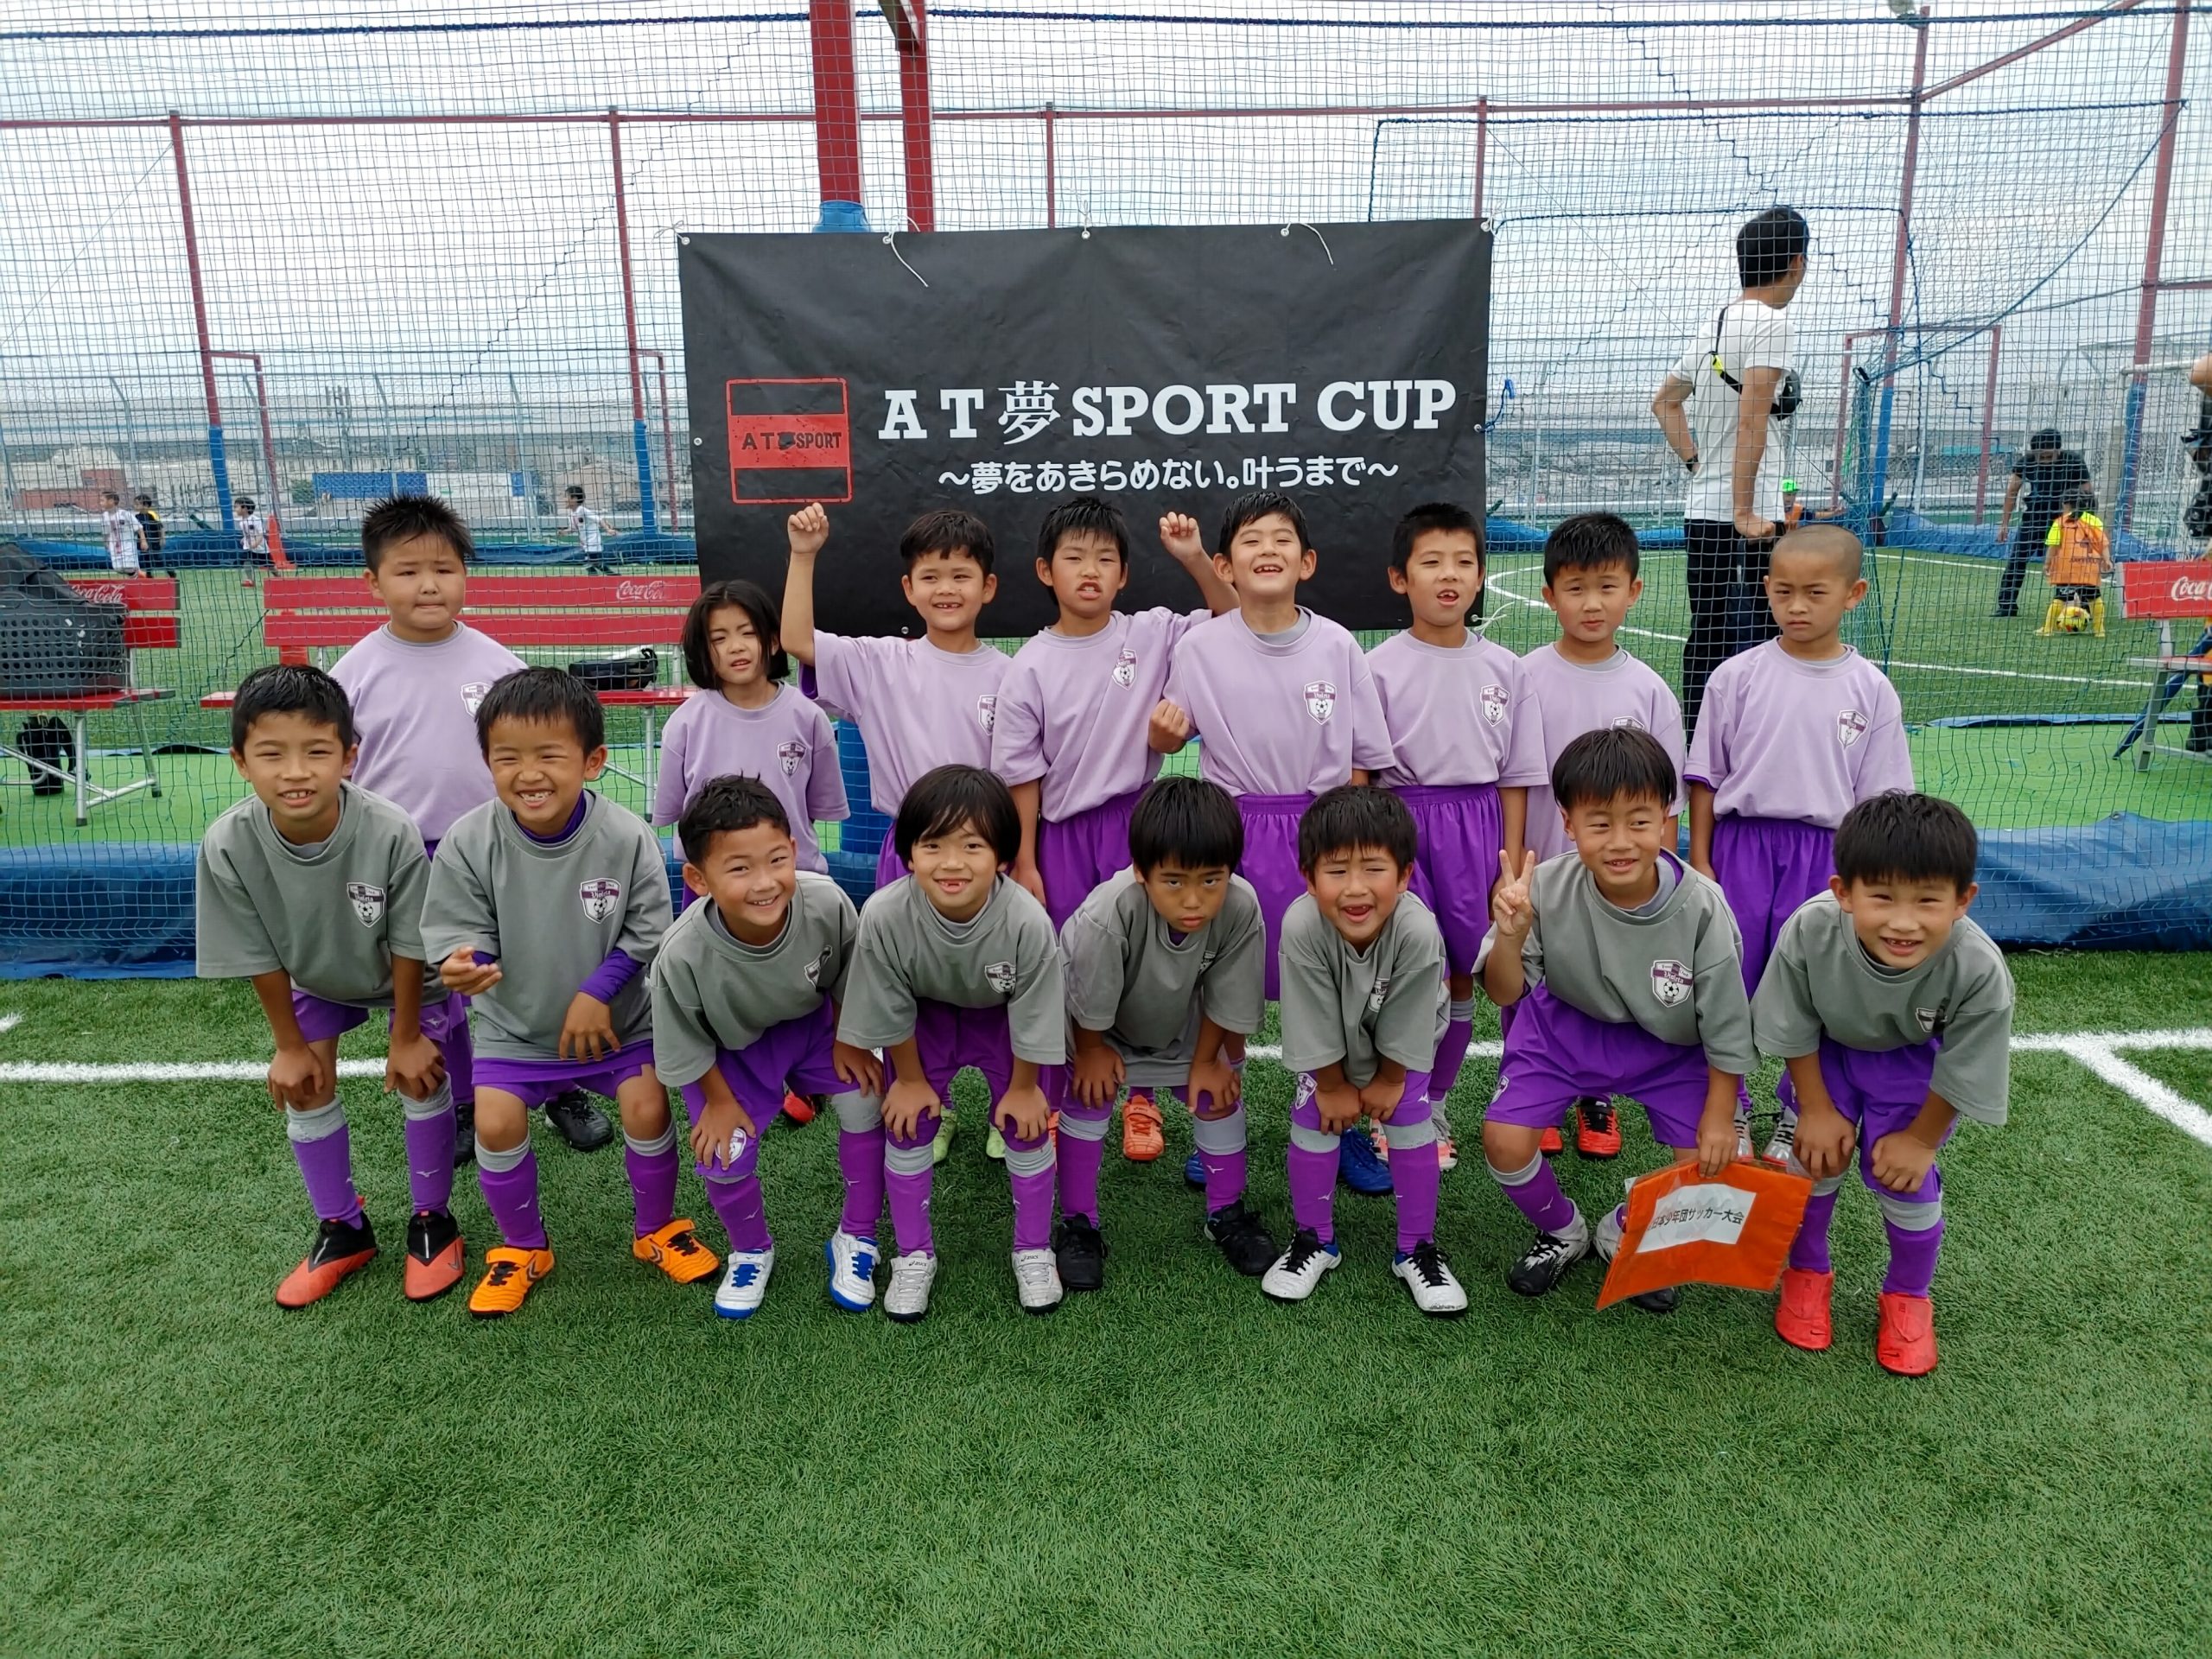 １ ２年生 全日本少年団サッカー大会 U8ミニサッカー大会 準優勝 ヴィオレータフットボールクラブ